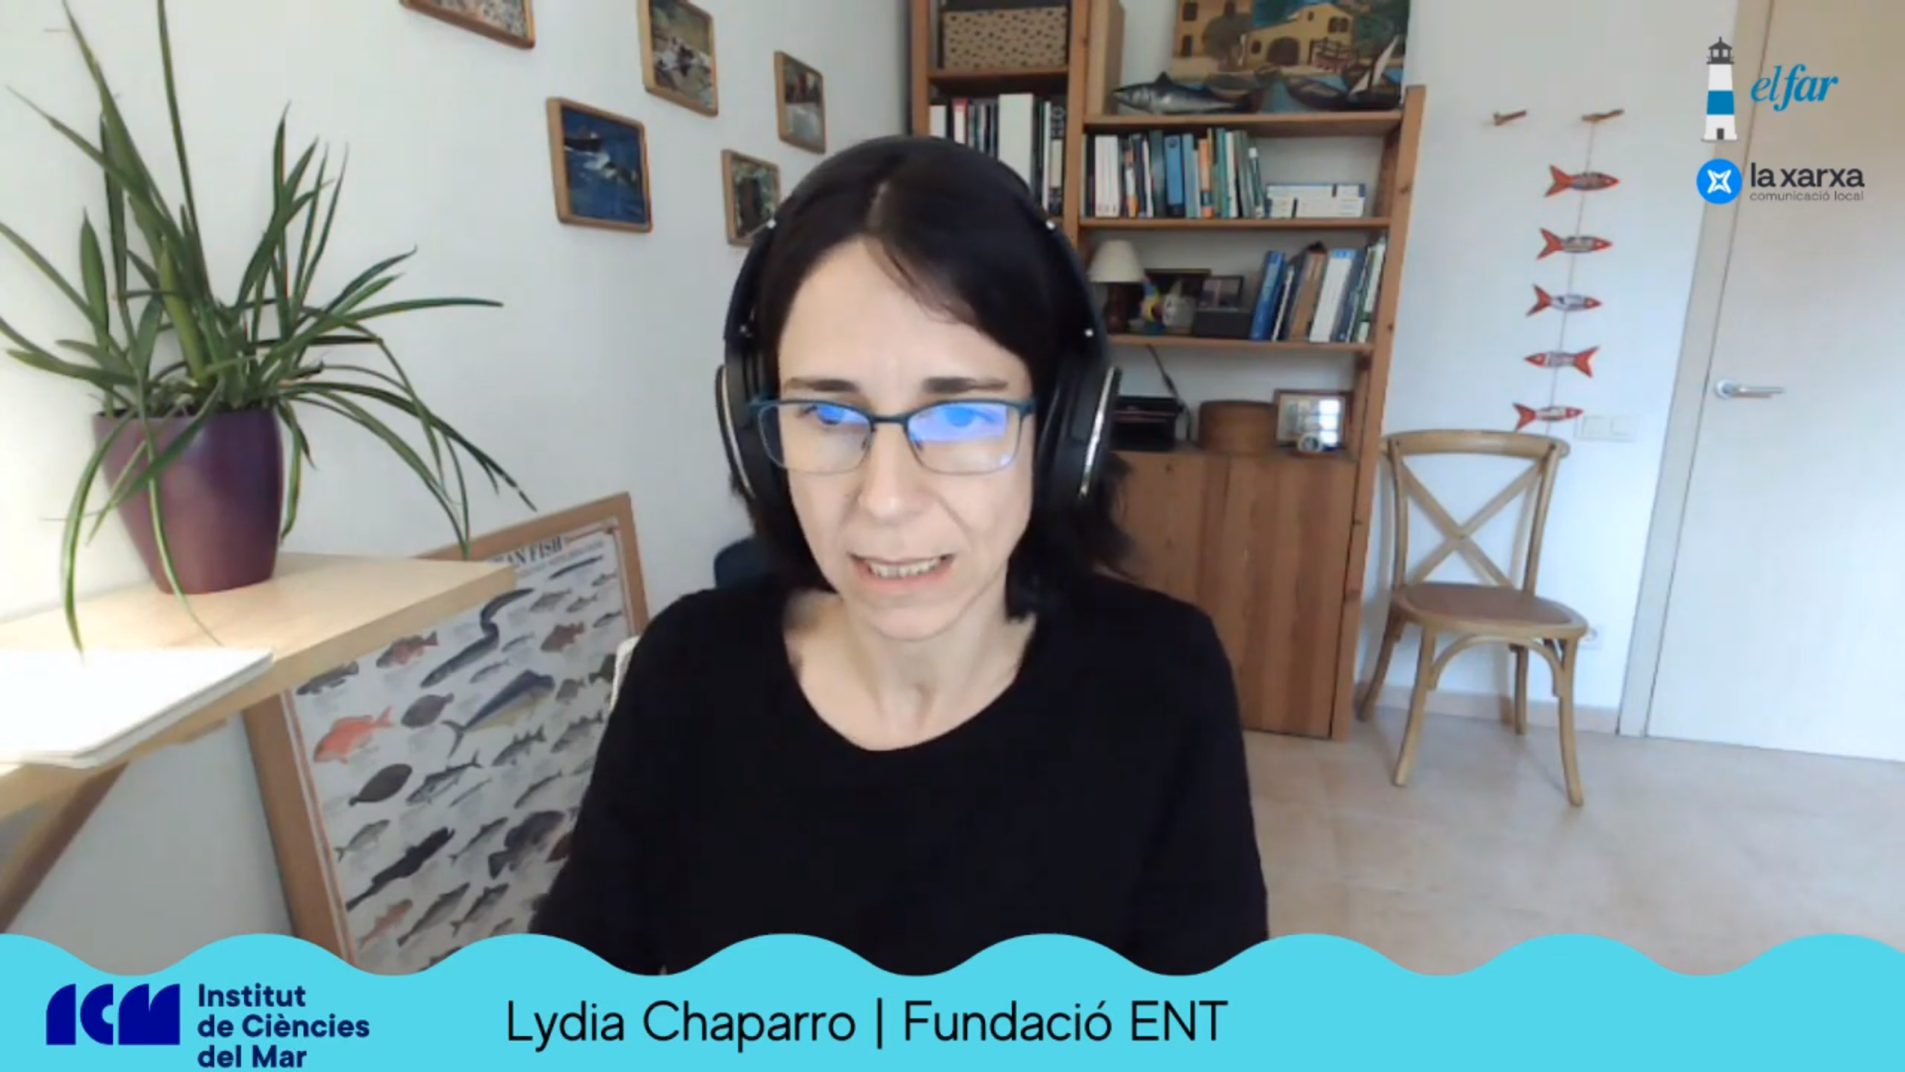 Lydia Chaparro (Fundació ENT) participa al Podcast de l’Institut de Ciències del Mar (CSIC) i Ràdio el Far